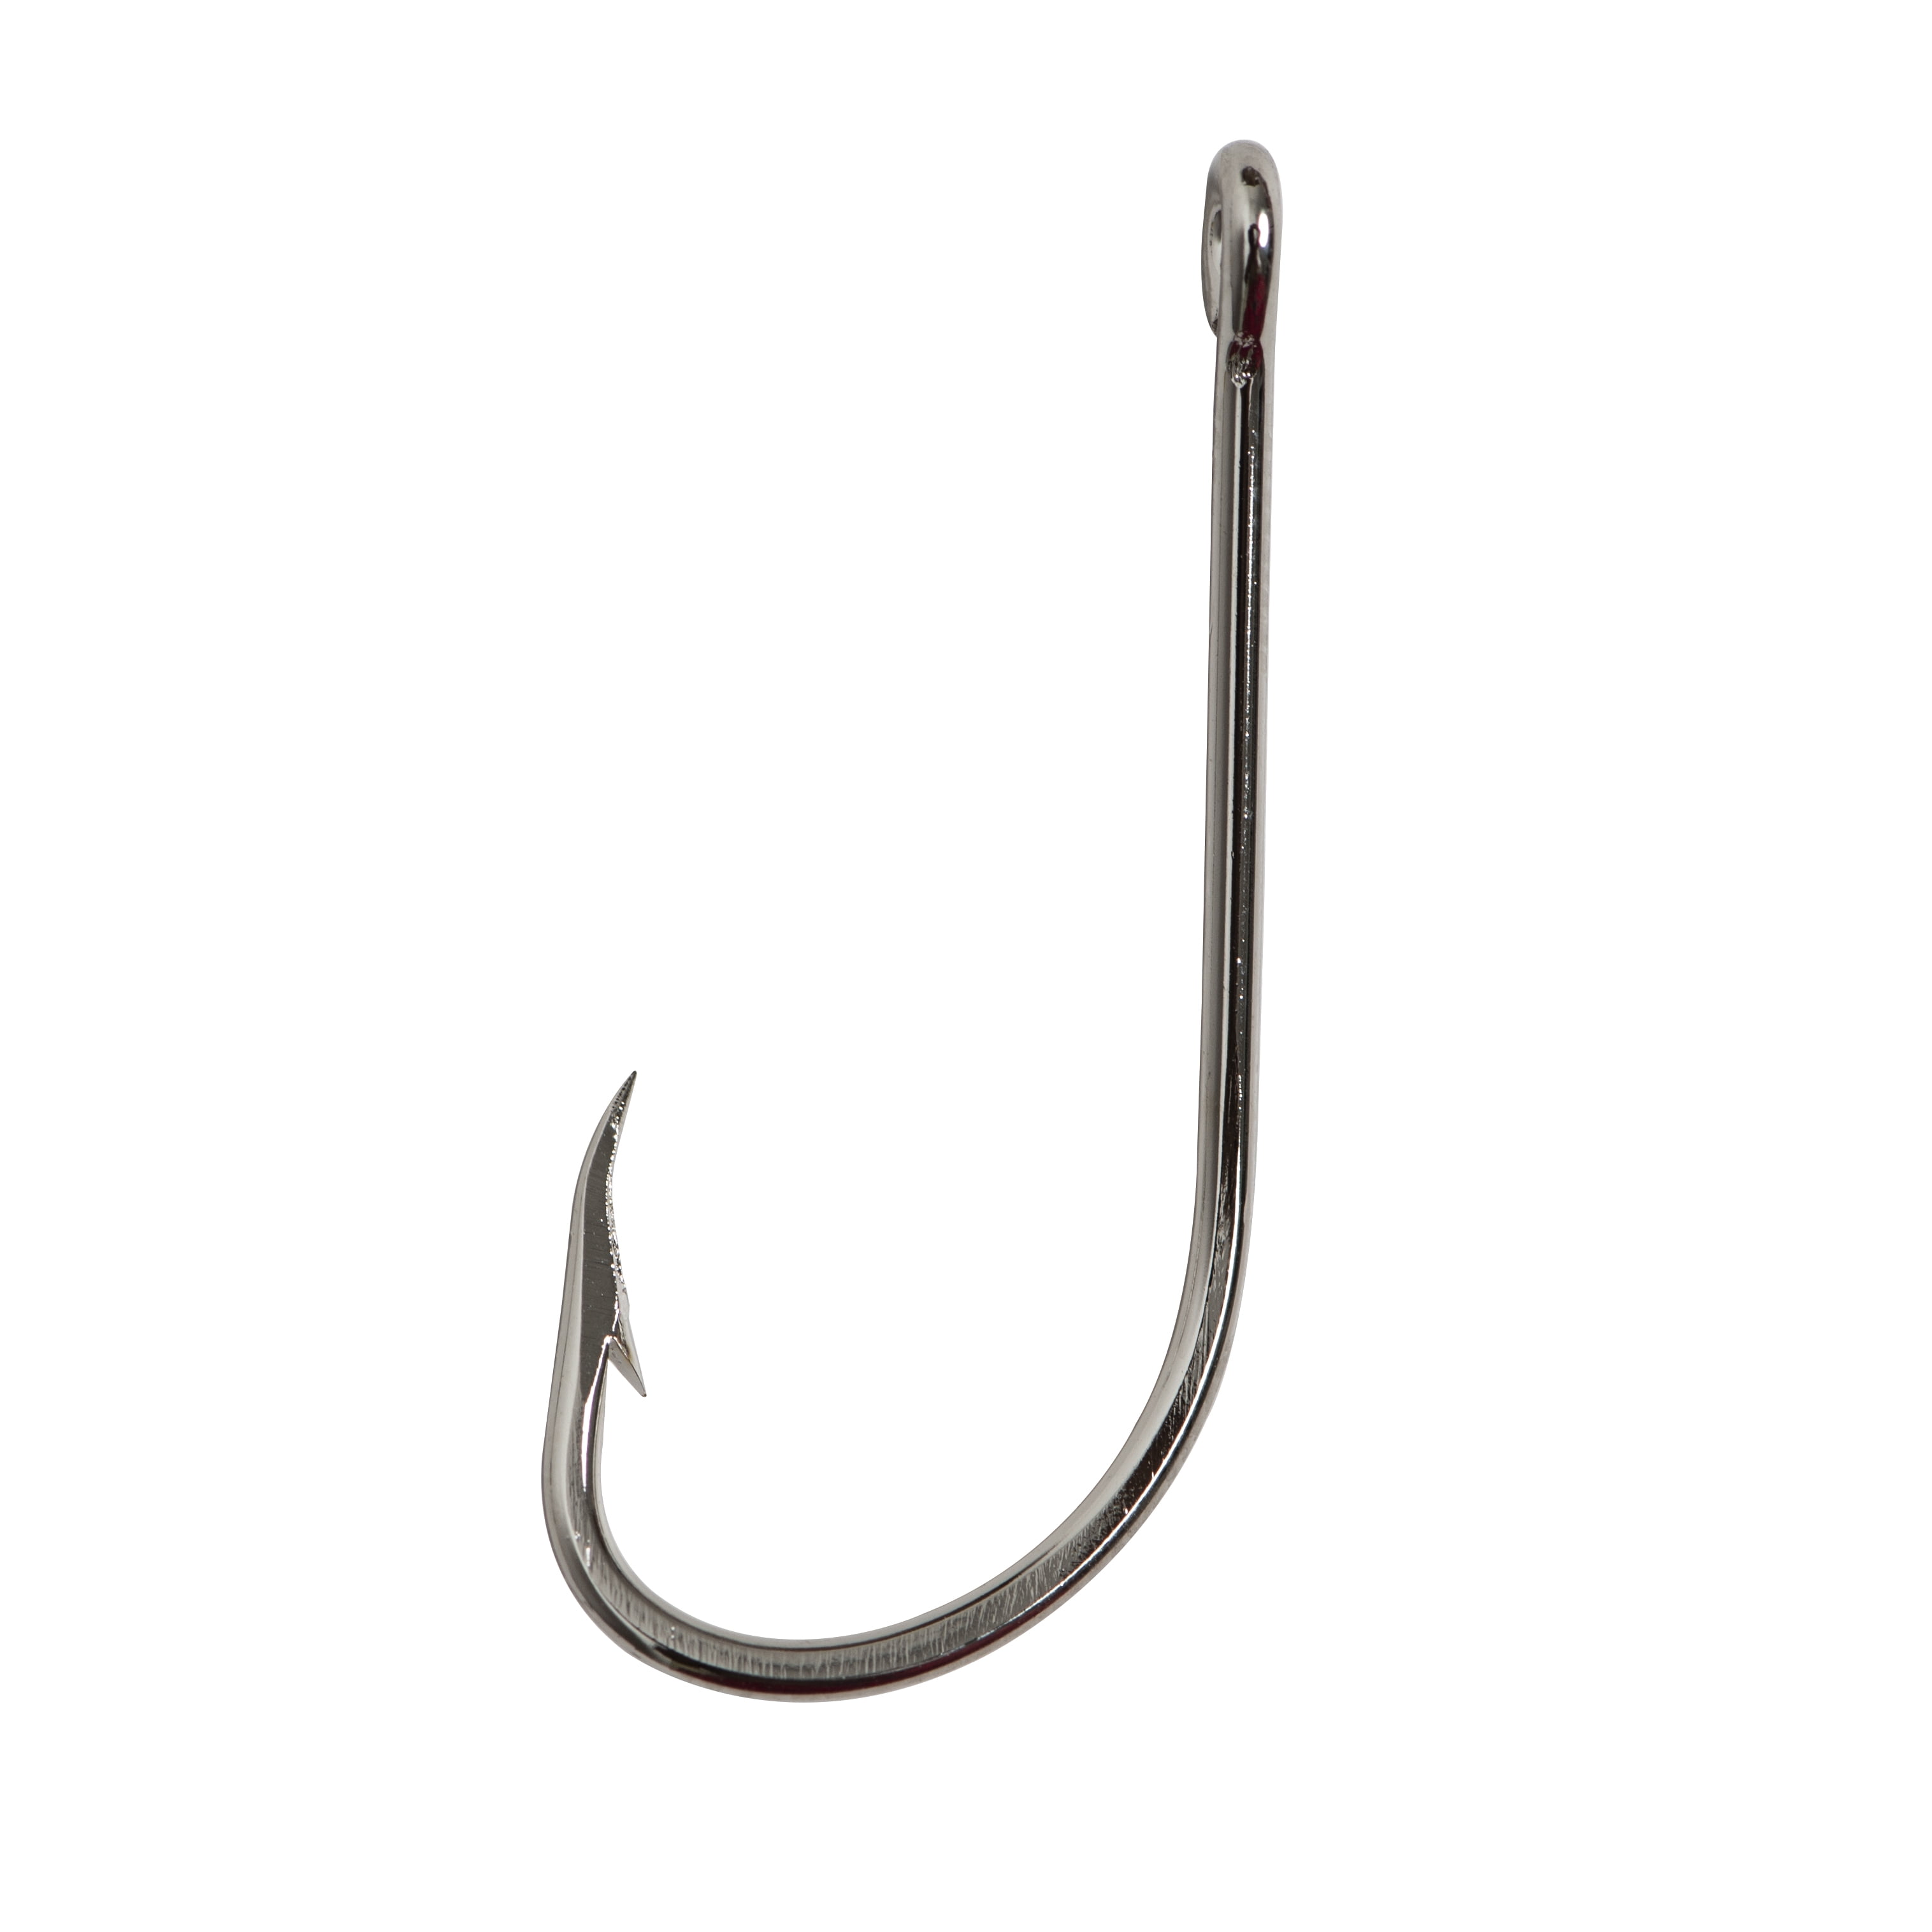 Mustad Baitholder Hook (Nickel) - Size: #2 50pc 